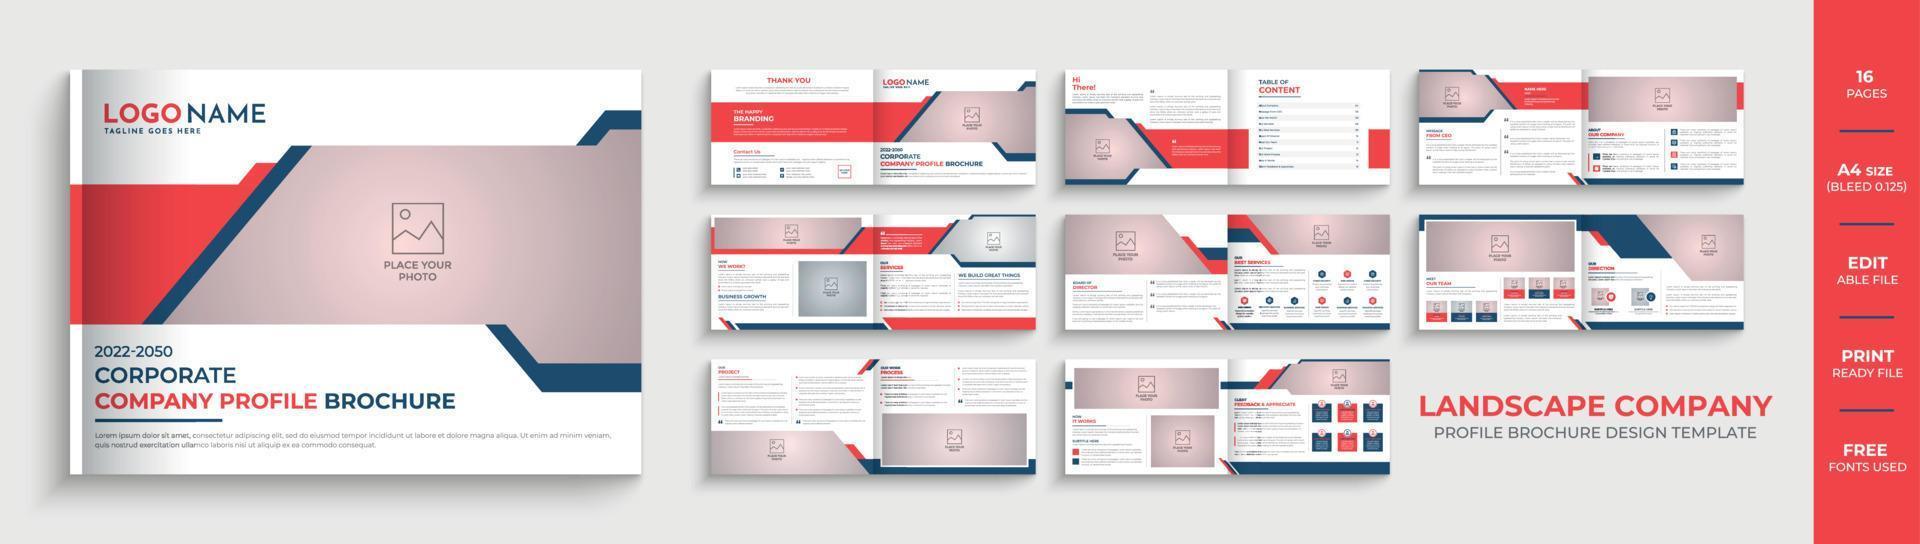 Conception de brochure de profil d'entreprise de paysage créatif de 16 pages ou mise en page de modèle de brochure d'entreprise vecteur